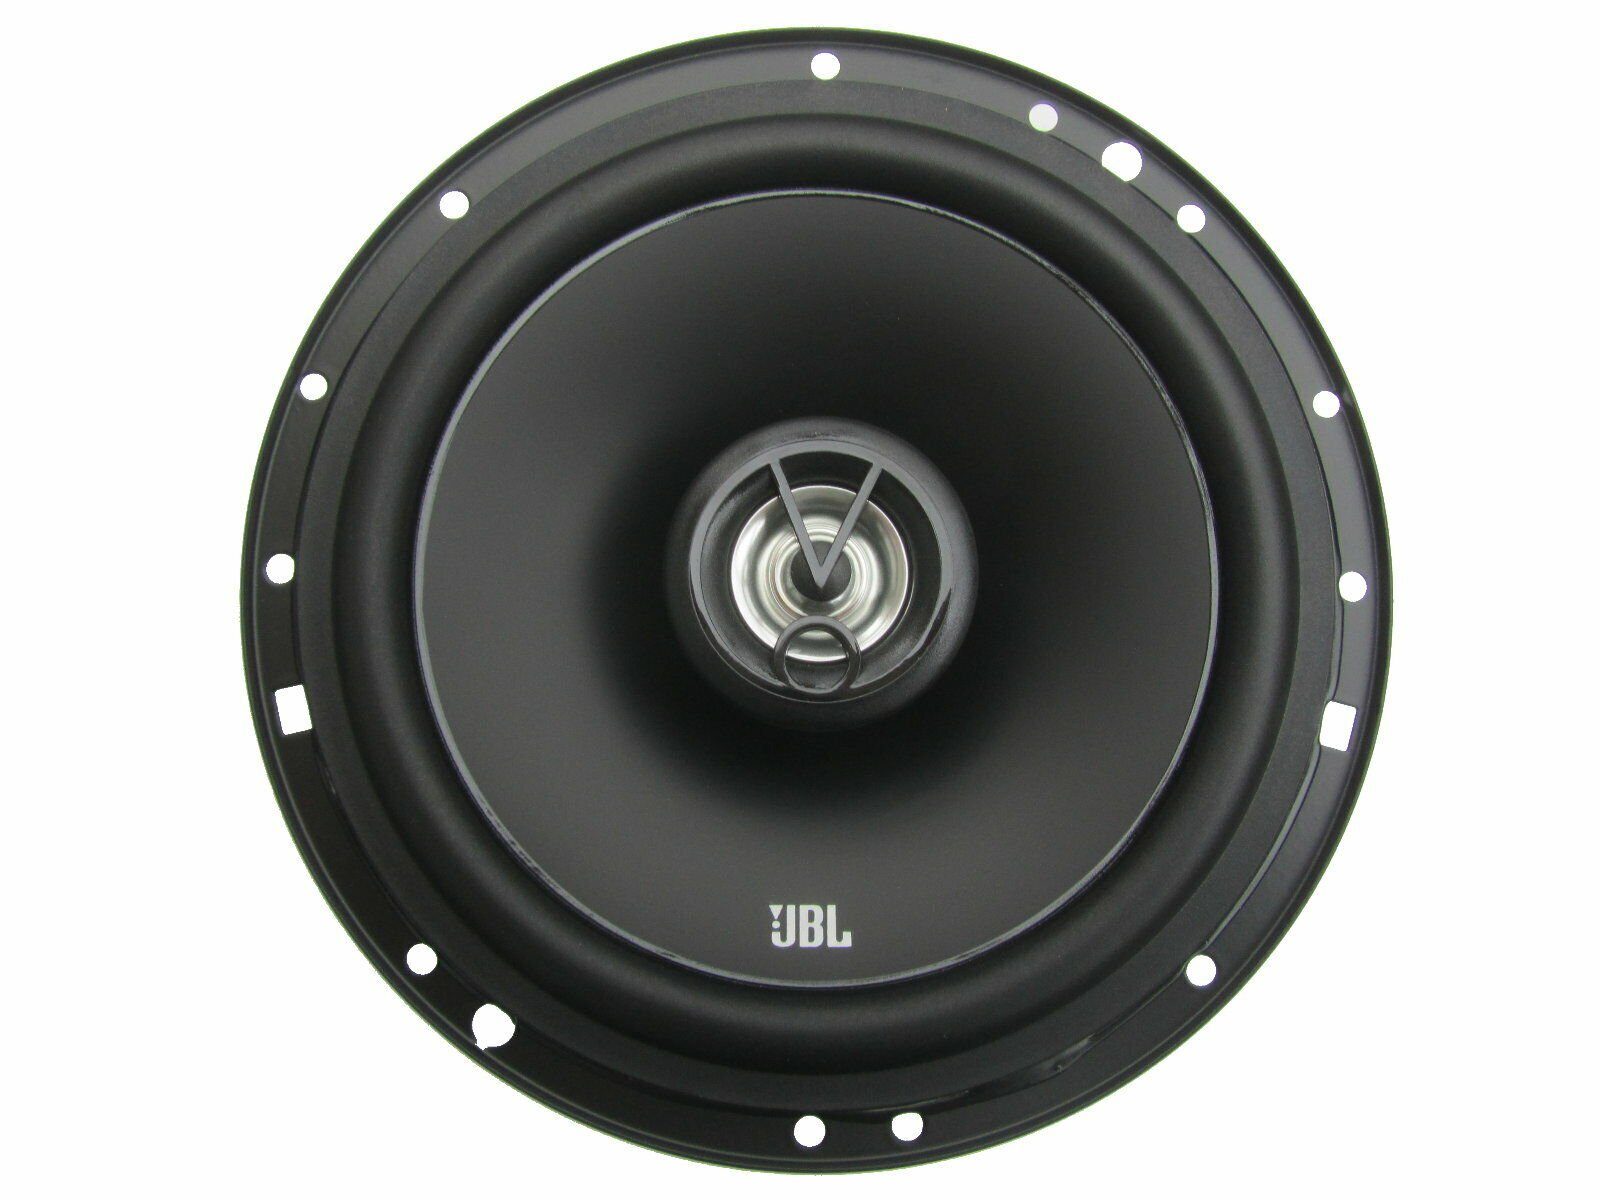 DSX JBL (75 vorne W) für Bj XL Altea Bü 04-15 Tür Seat Auto-Lautsprecher hinten